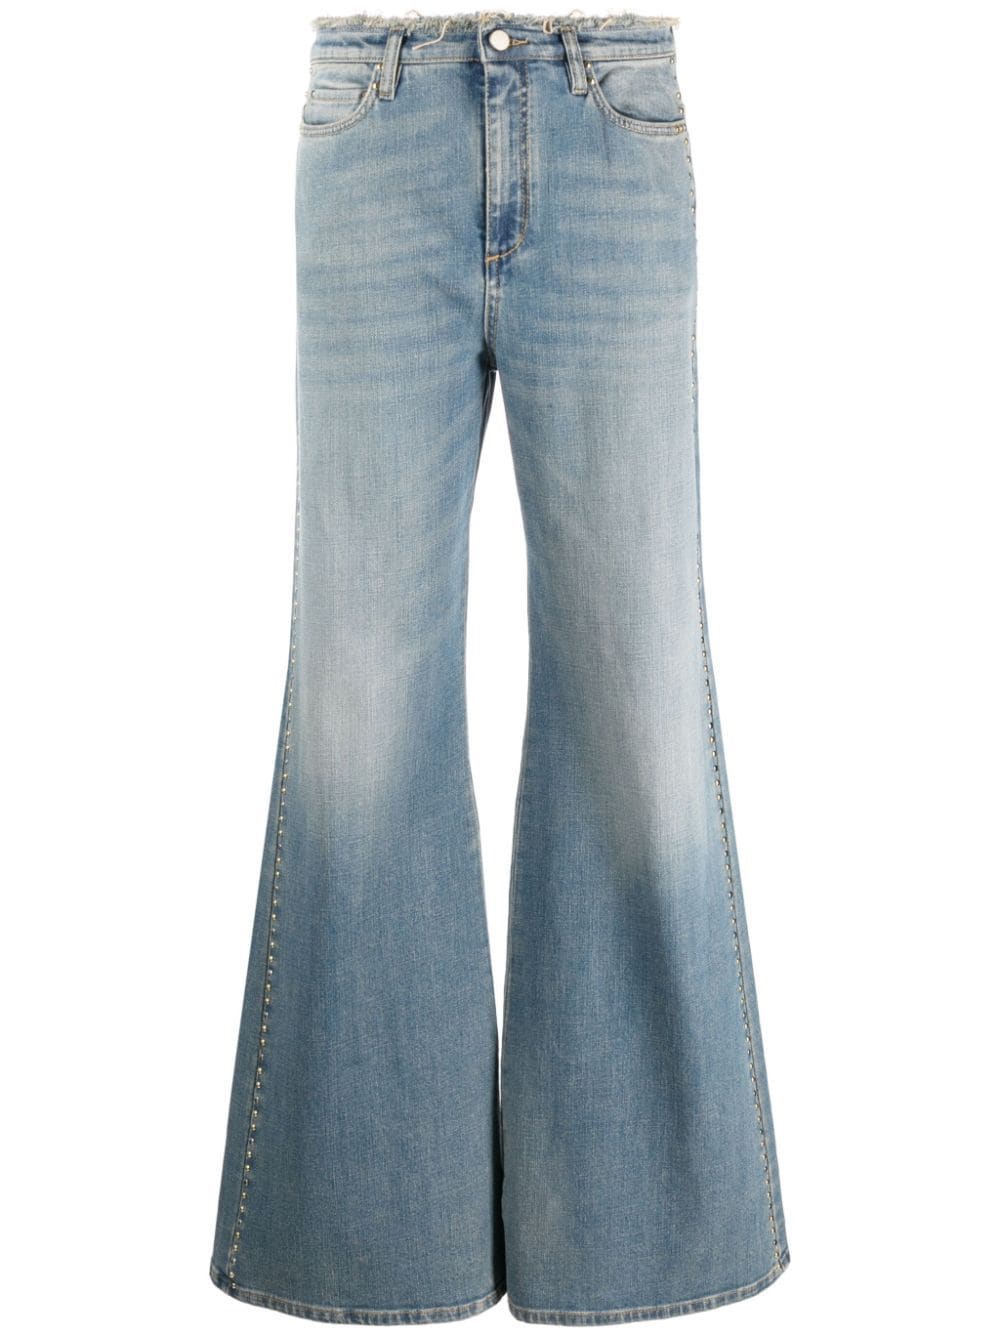 Dorothee Schumacher stud-embellished frayed bootcut jeans - Blue von Dorothee Schumacher